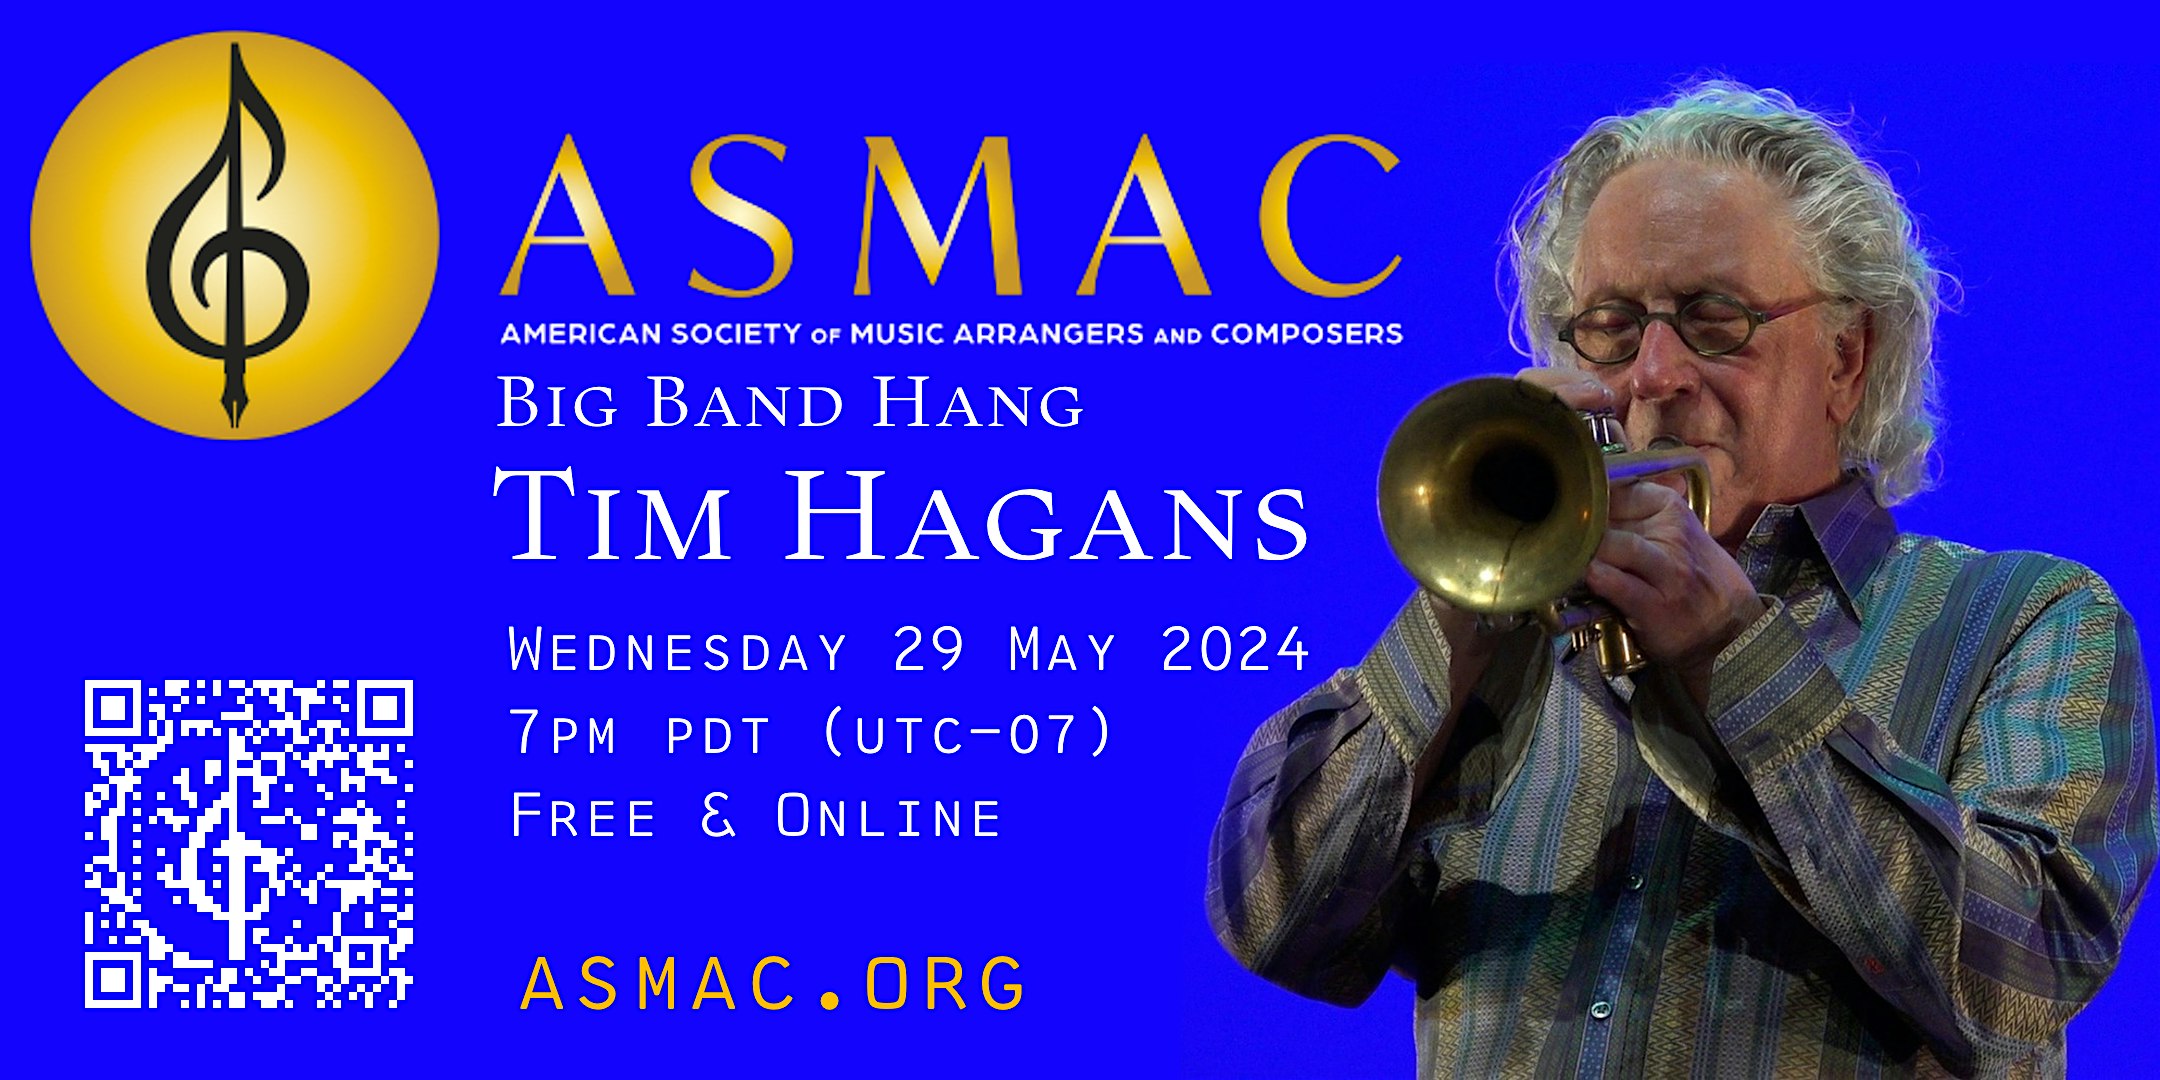 ASMAC Big Band Hang with Tim Hagans